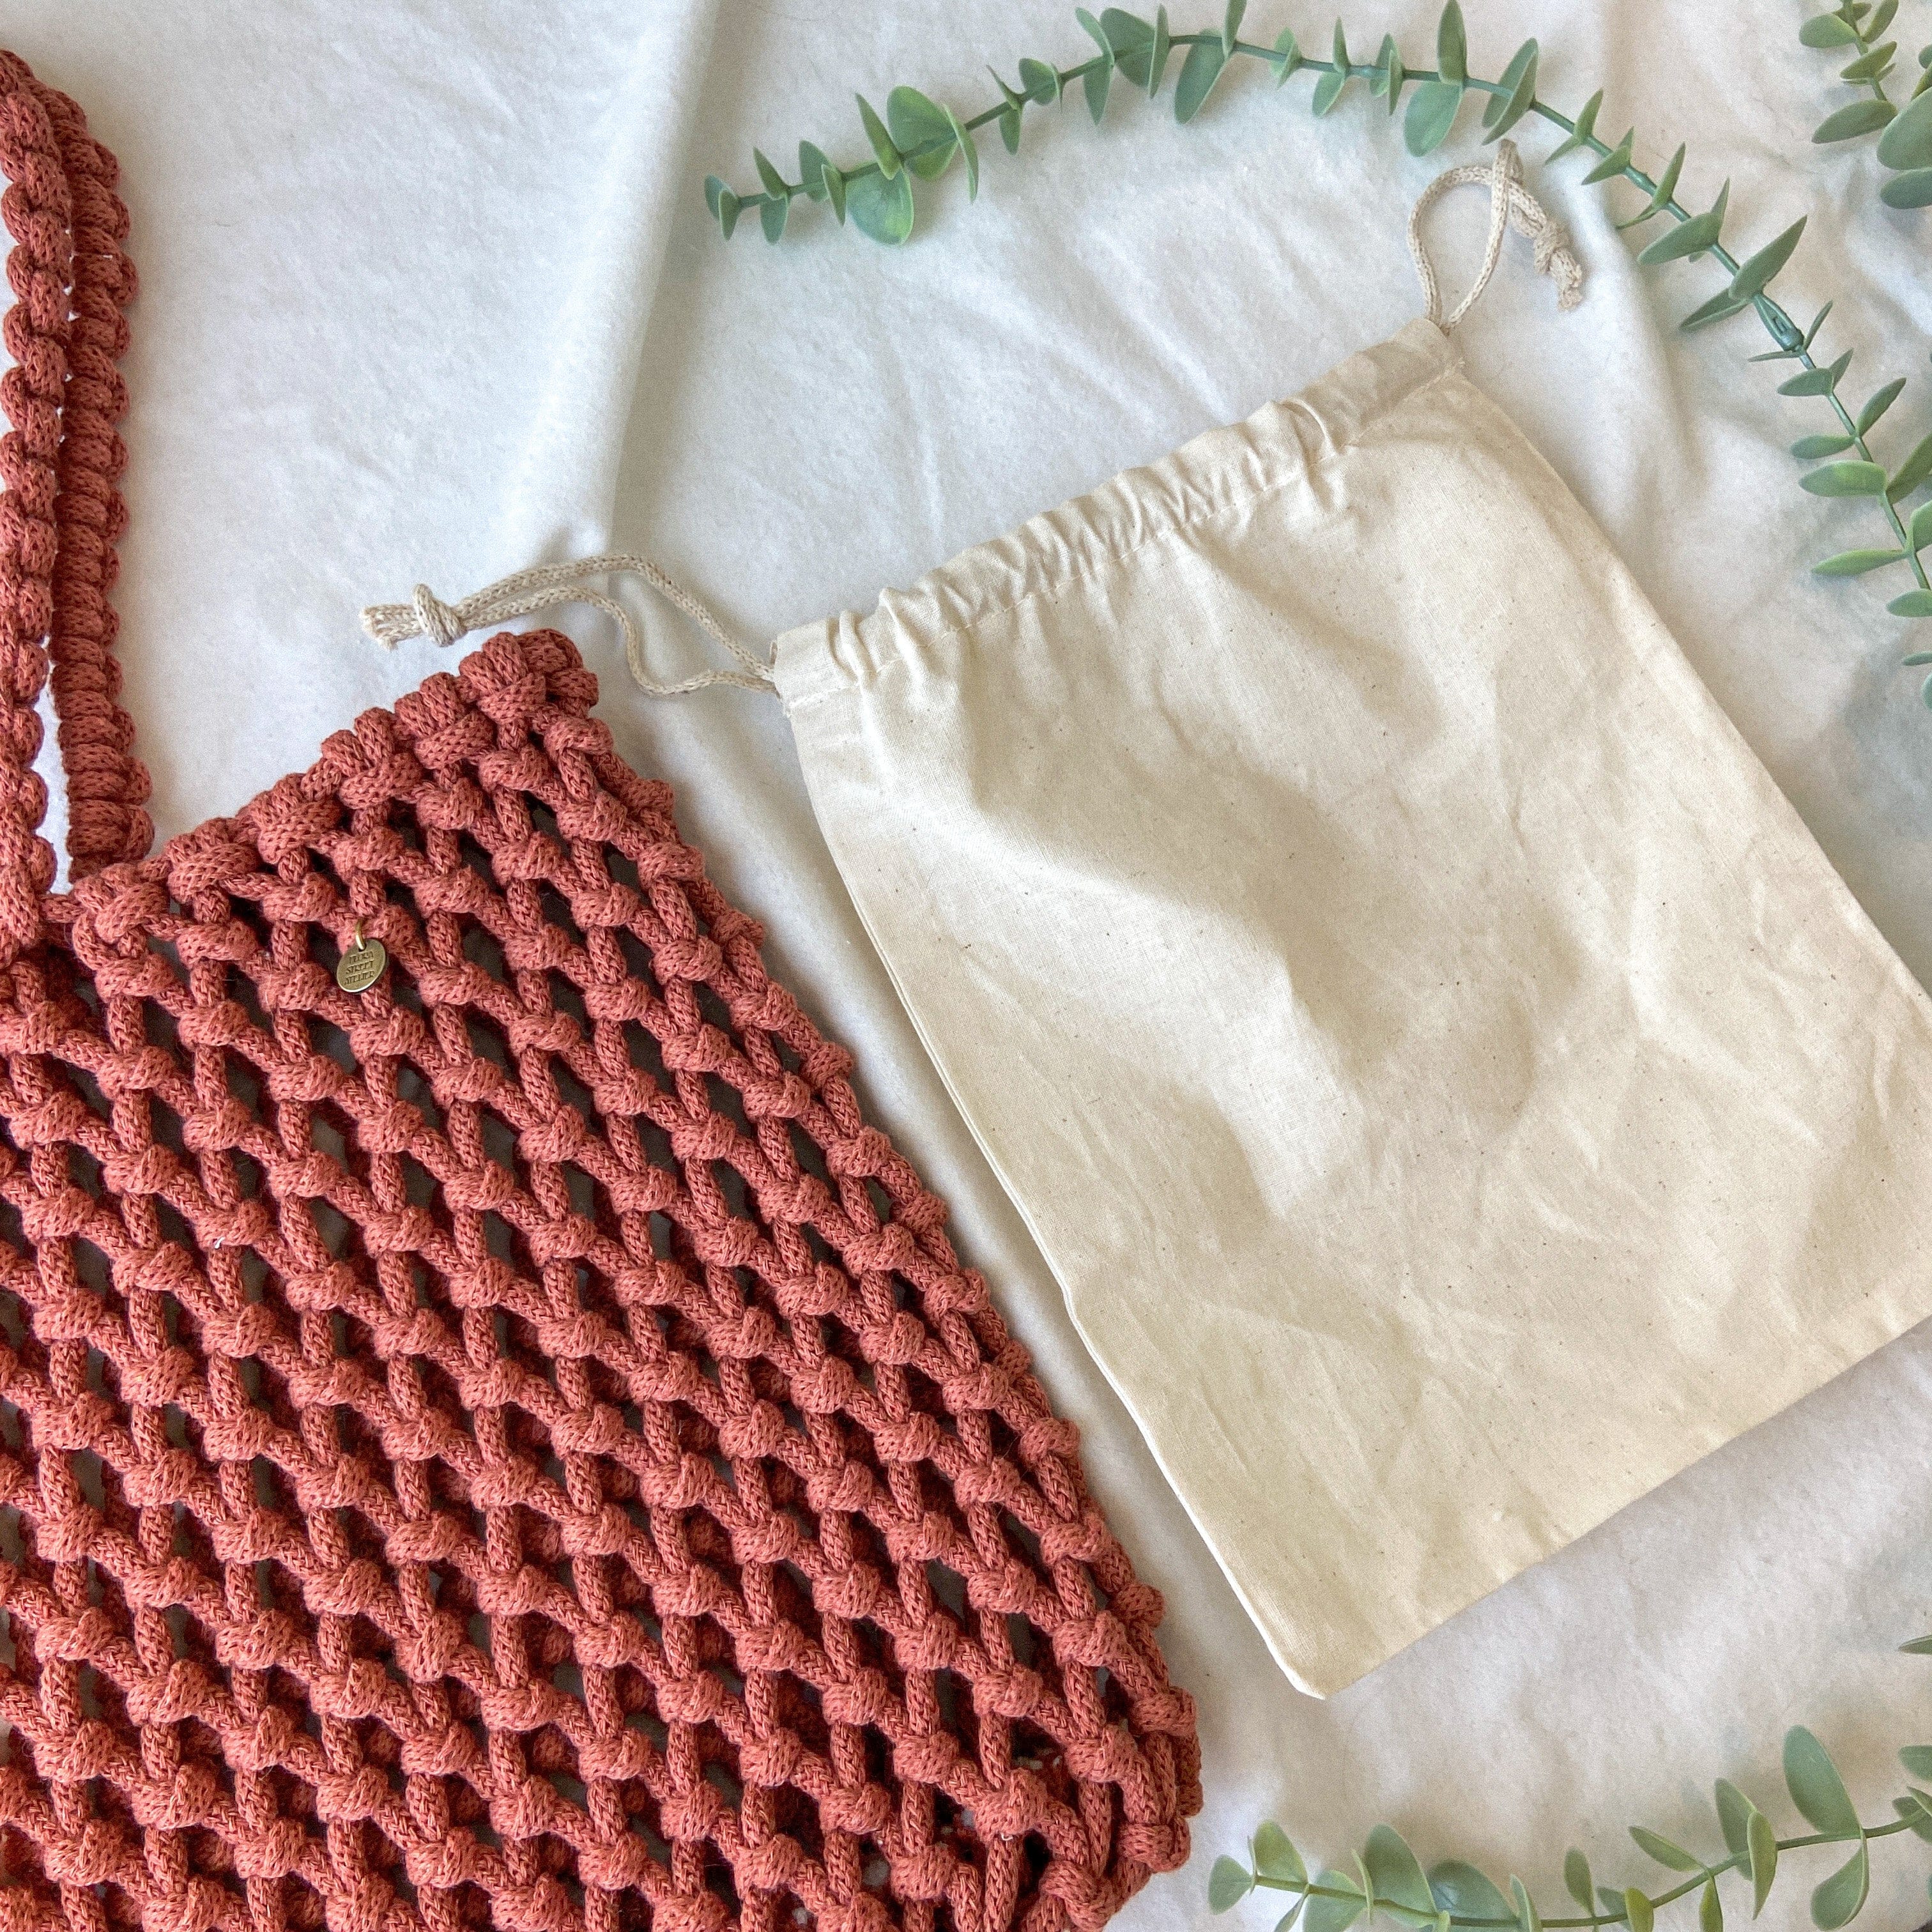 How to Make this DIY Macrame Tote Bag using Jute | Fall For DIY